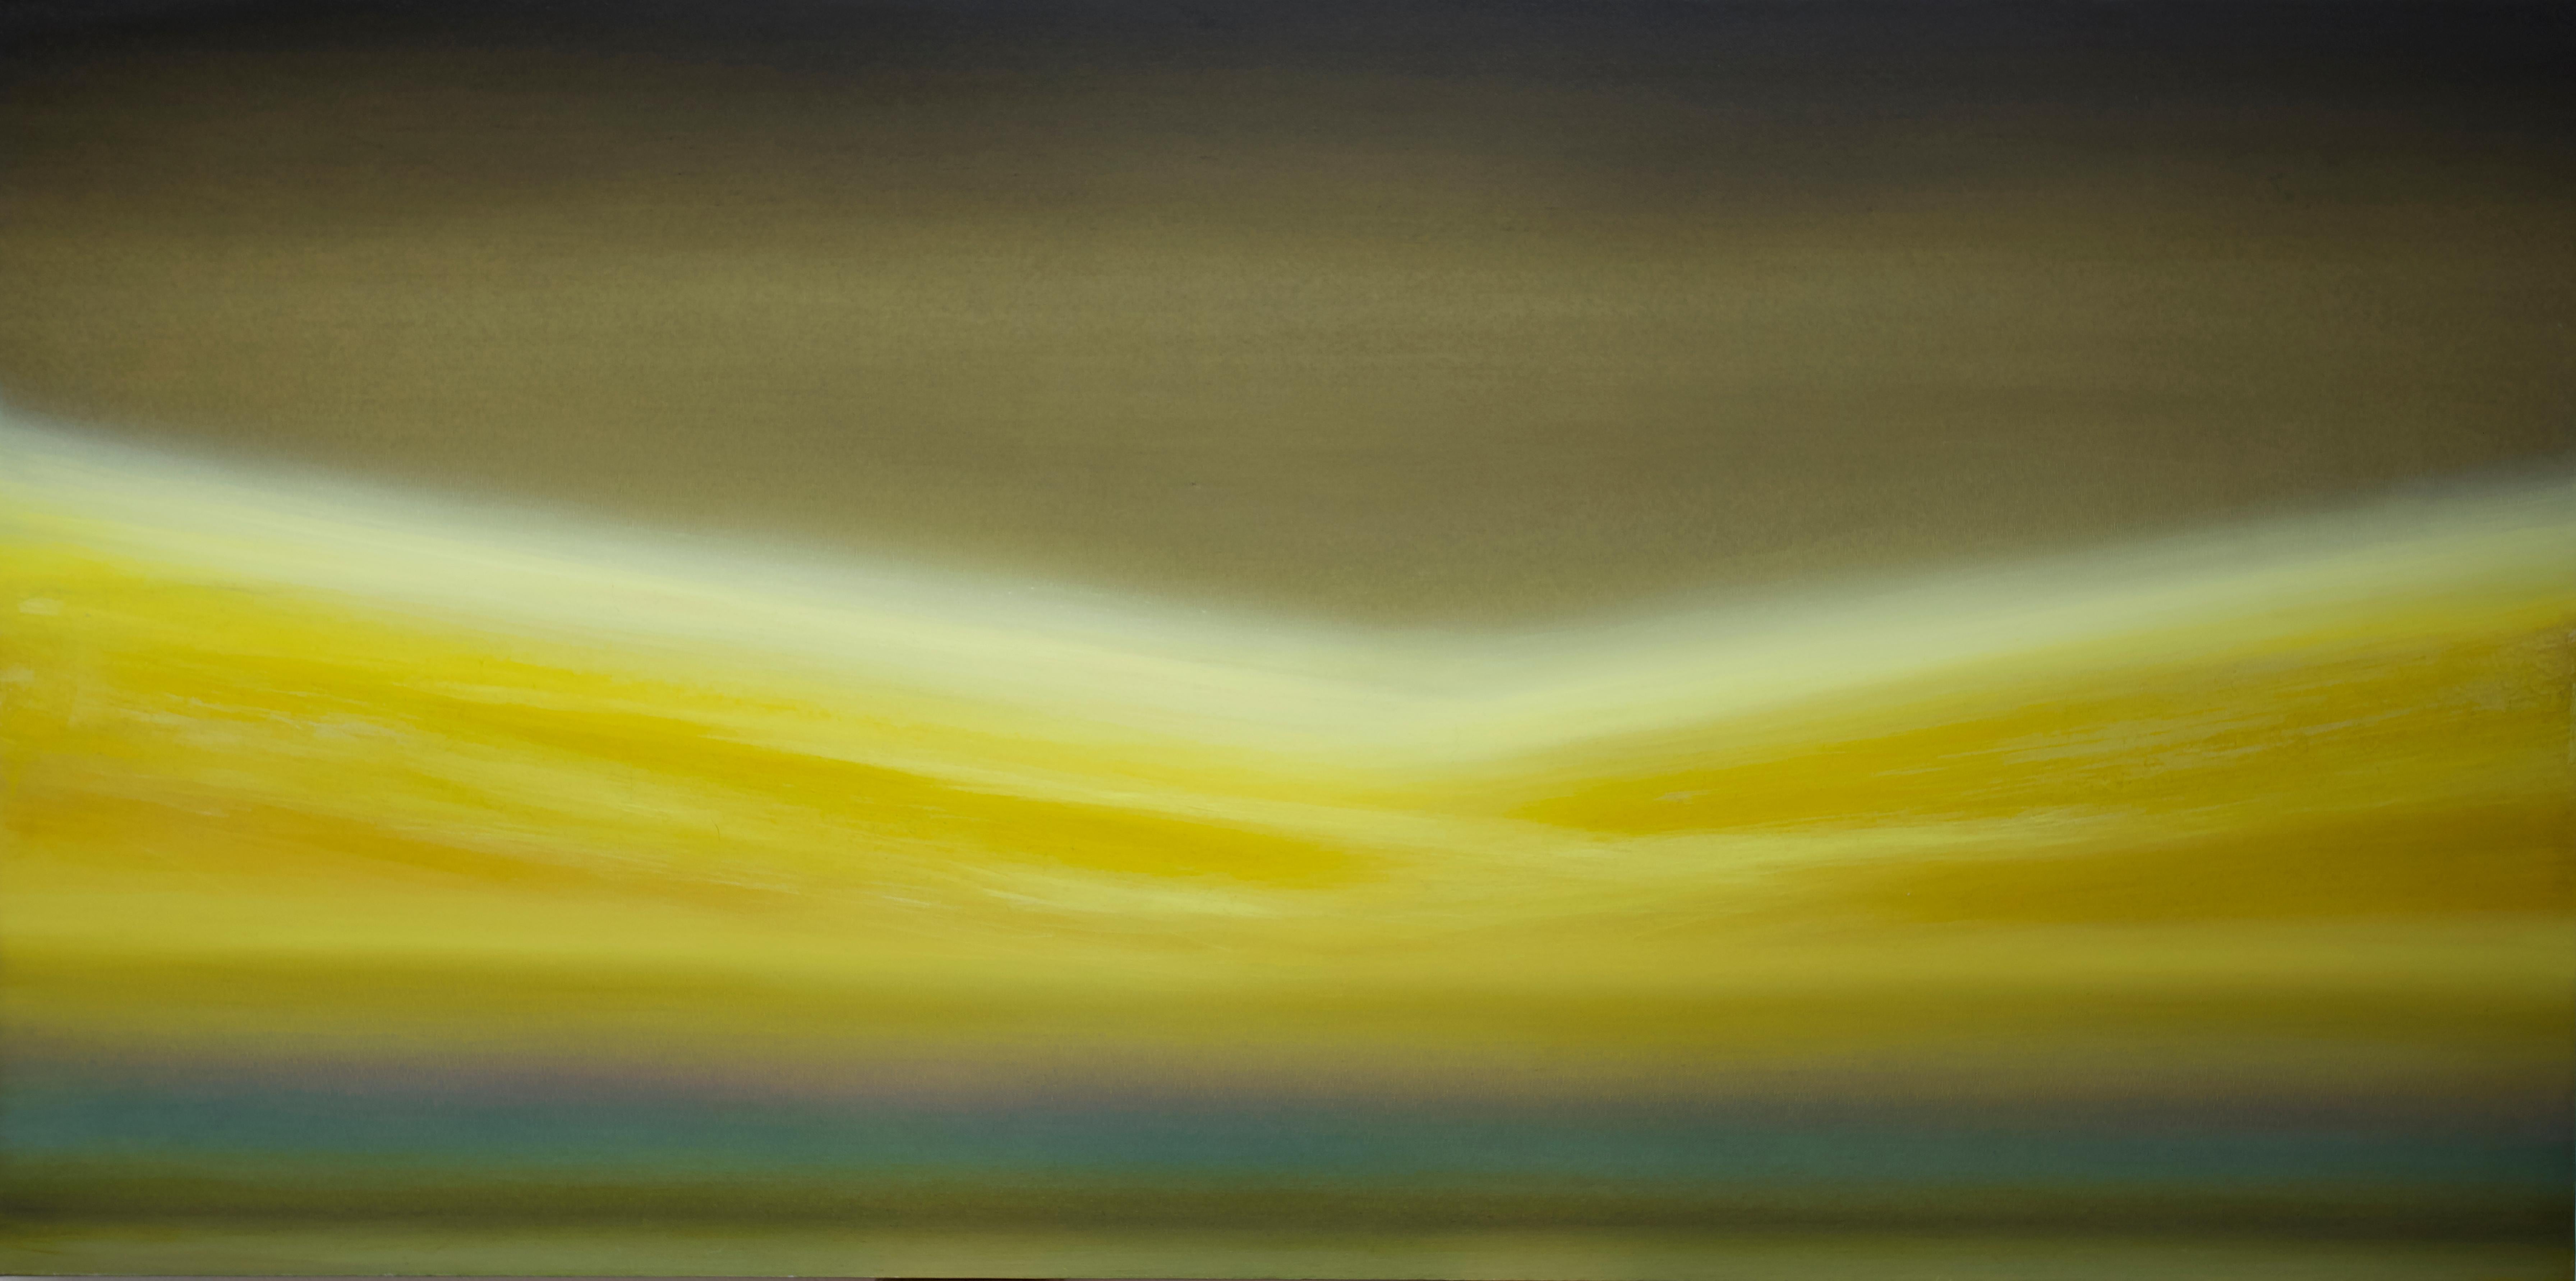 ""Seasick on Dry Land Lamda" - Art contemporain abstrait, huile sur toile synthétique - Painting de Mb Boissonnault